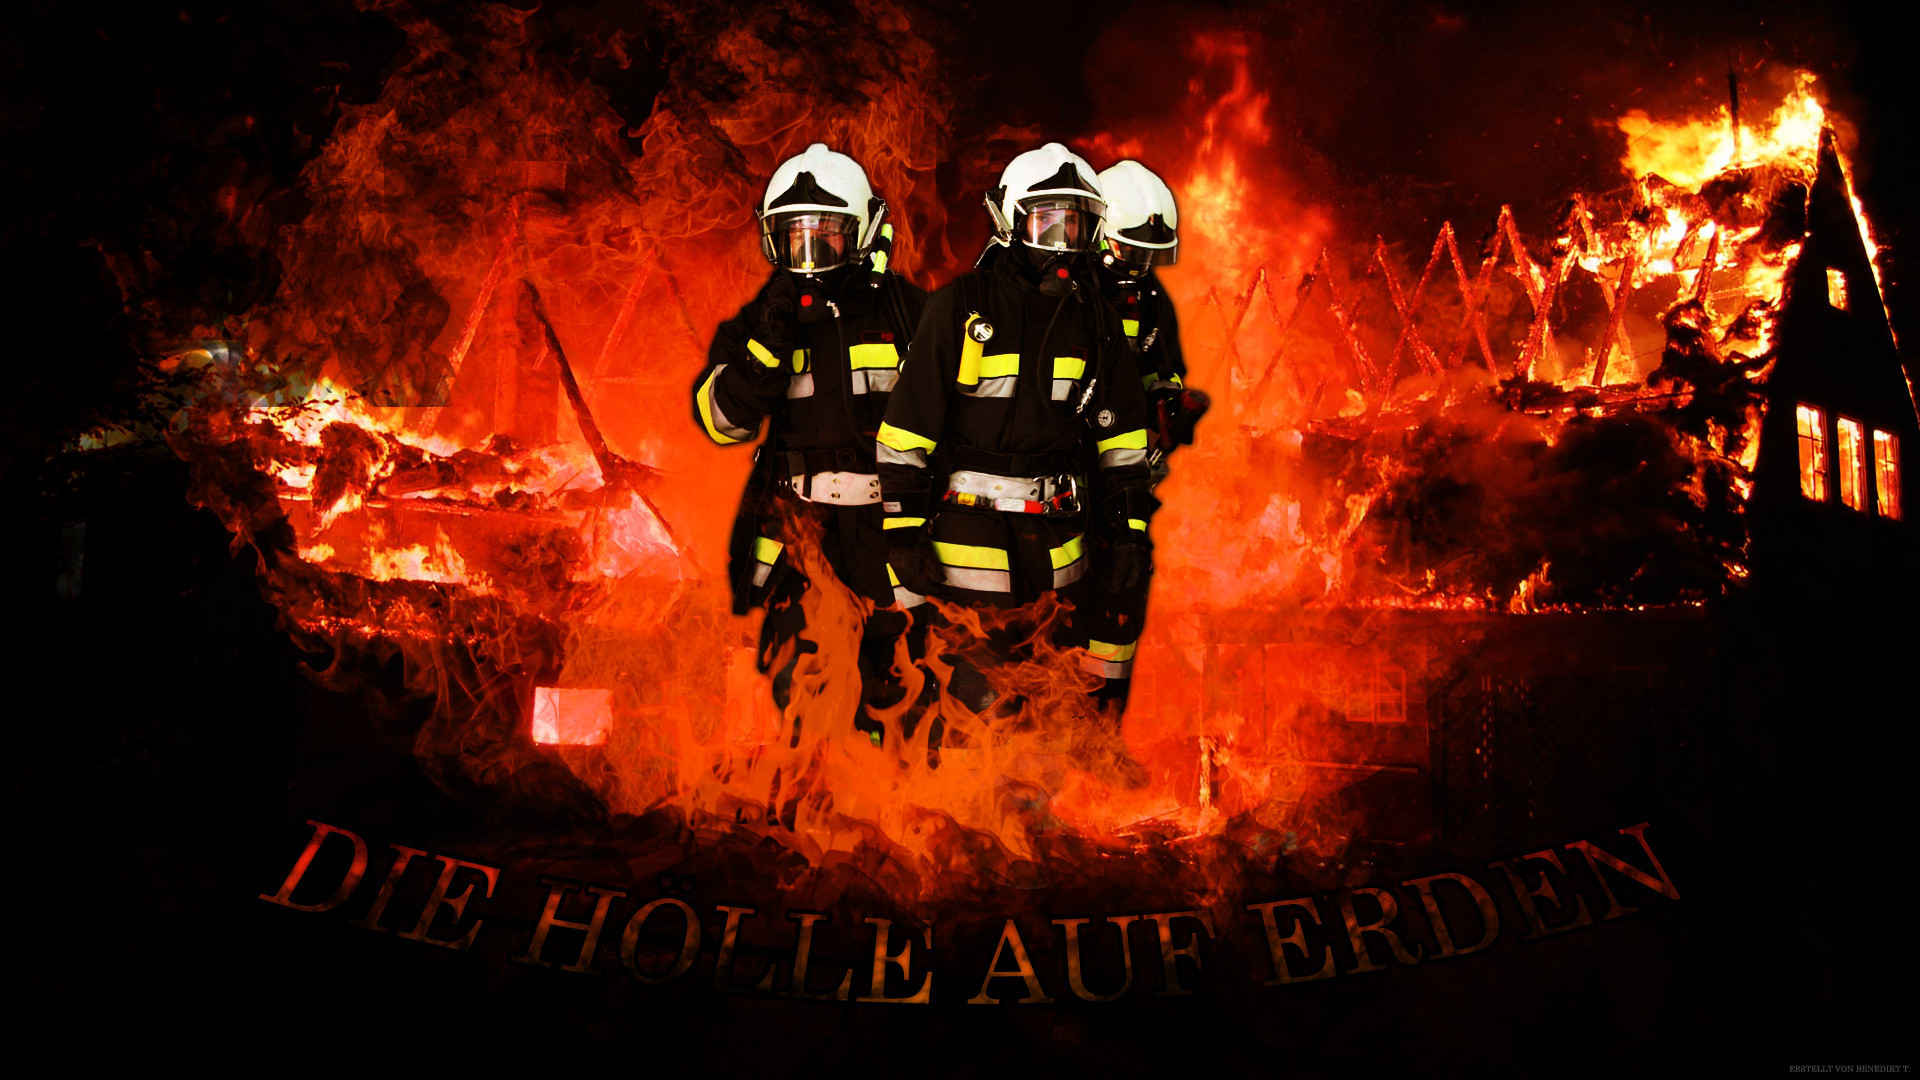 HD Firefighter Wallpaper